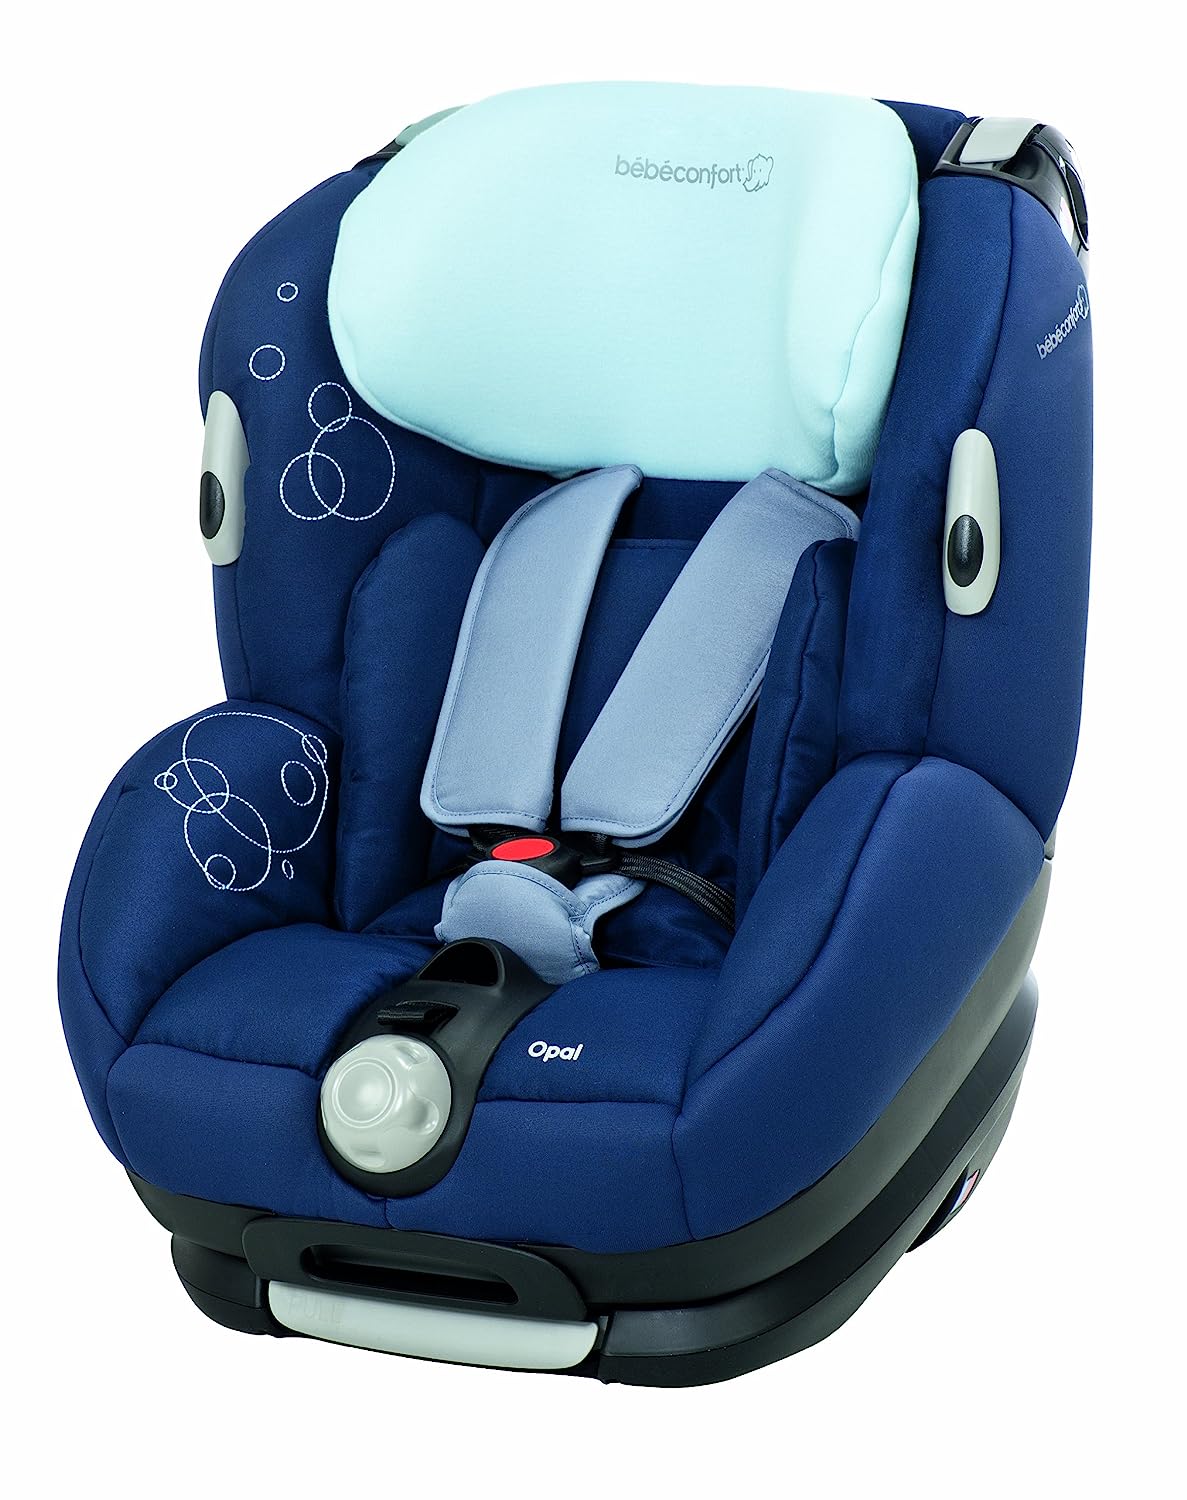 Bébé Confort Opal Child Car Seat Group 0+/1 0 to 18 kg